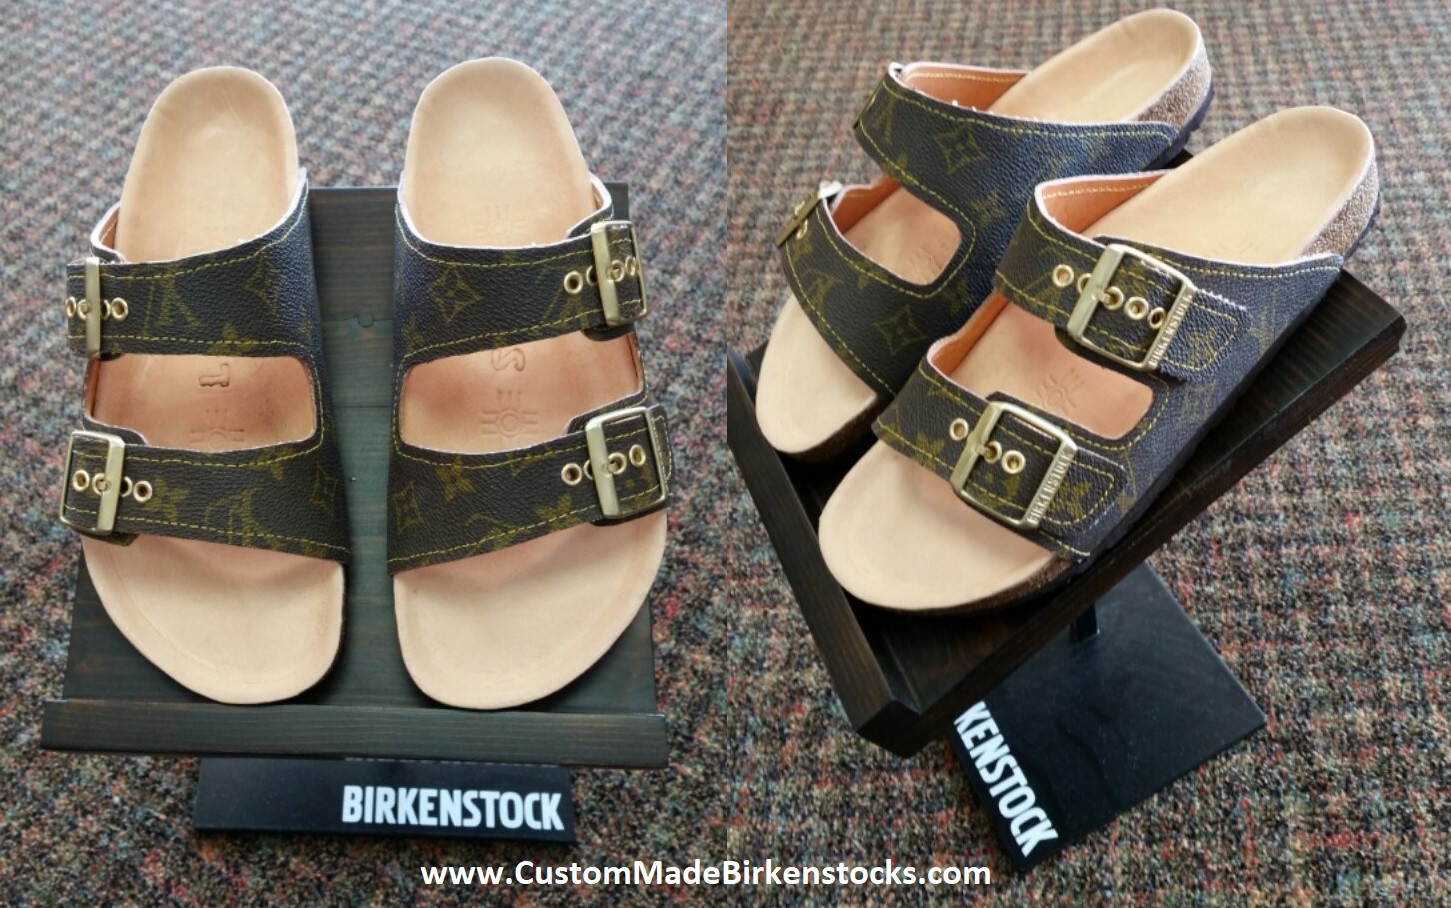 Birkenstock, Shoes, Louis Vuitton Handcustom Birkenstocks